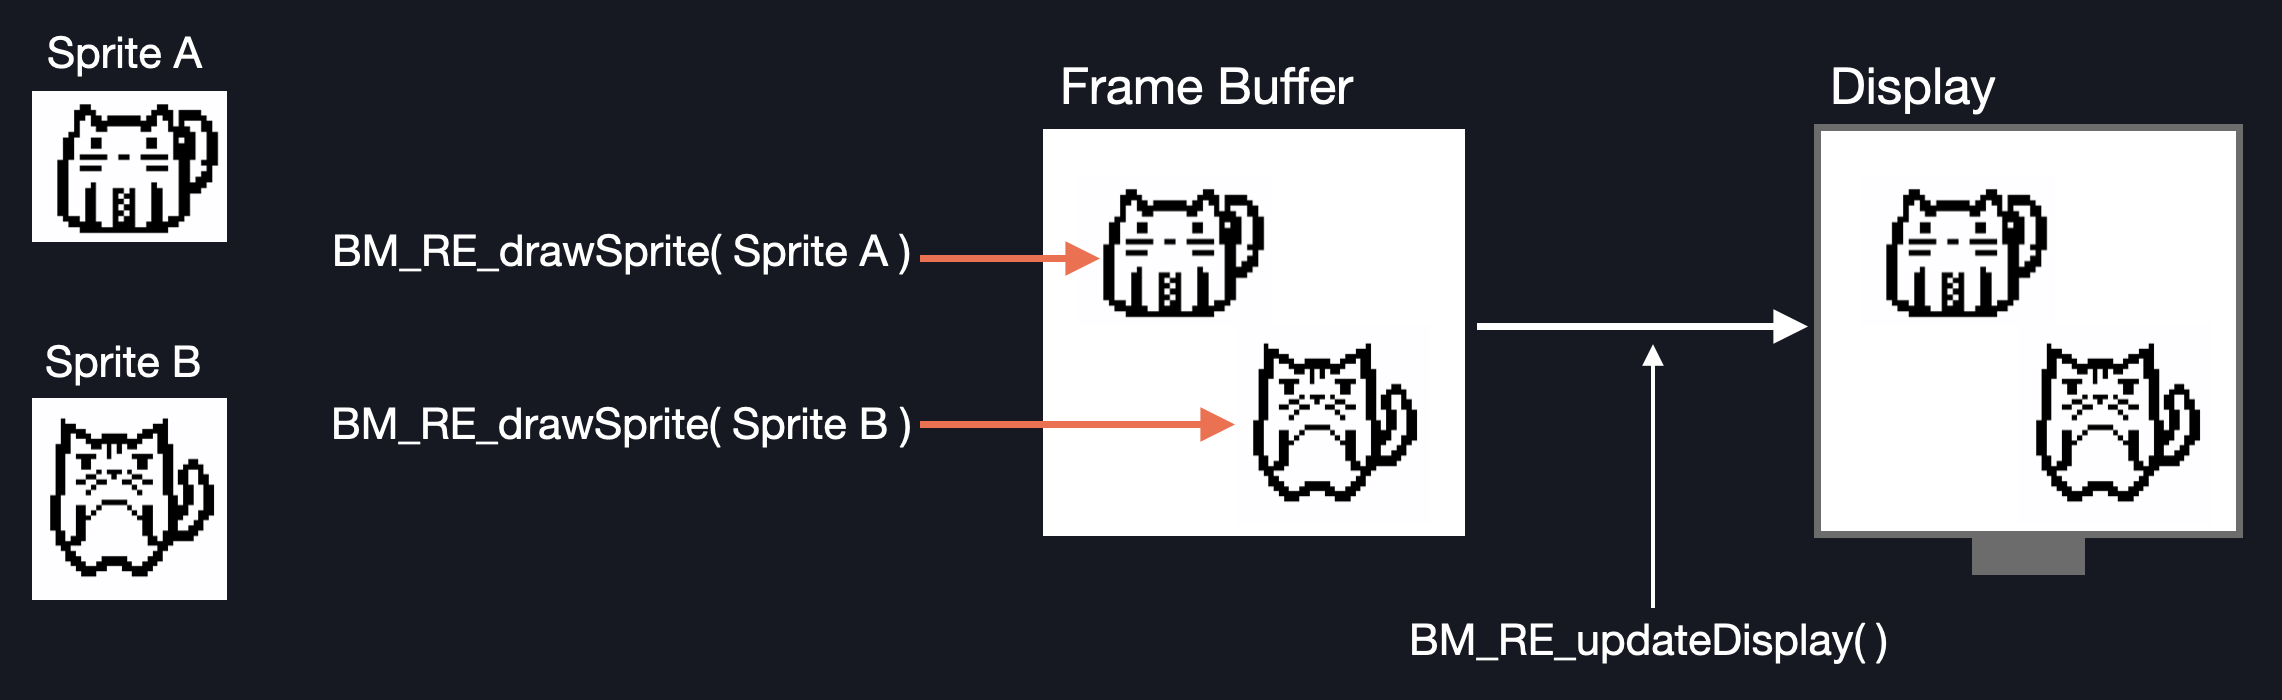 BM_Frame_Buffer